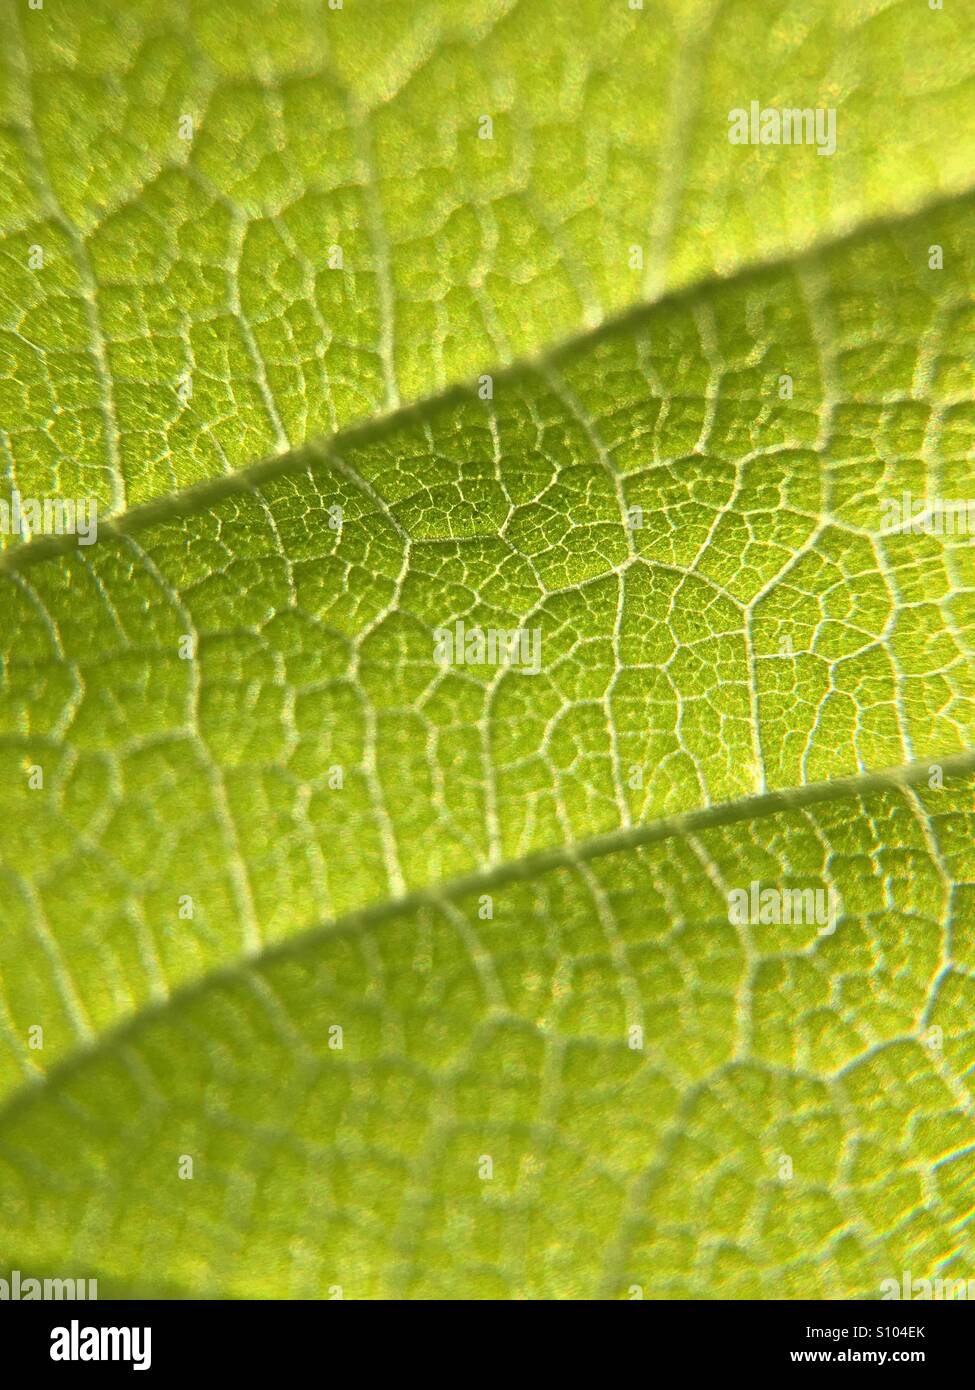 Leaf details Stock Photo